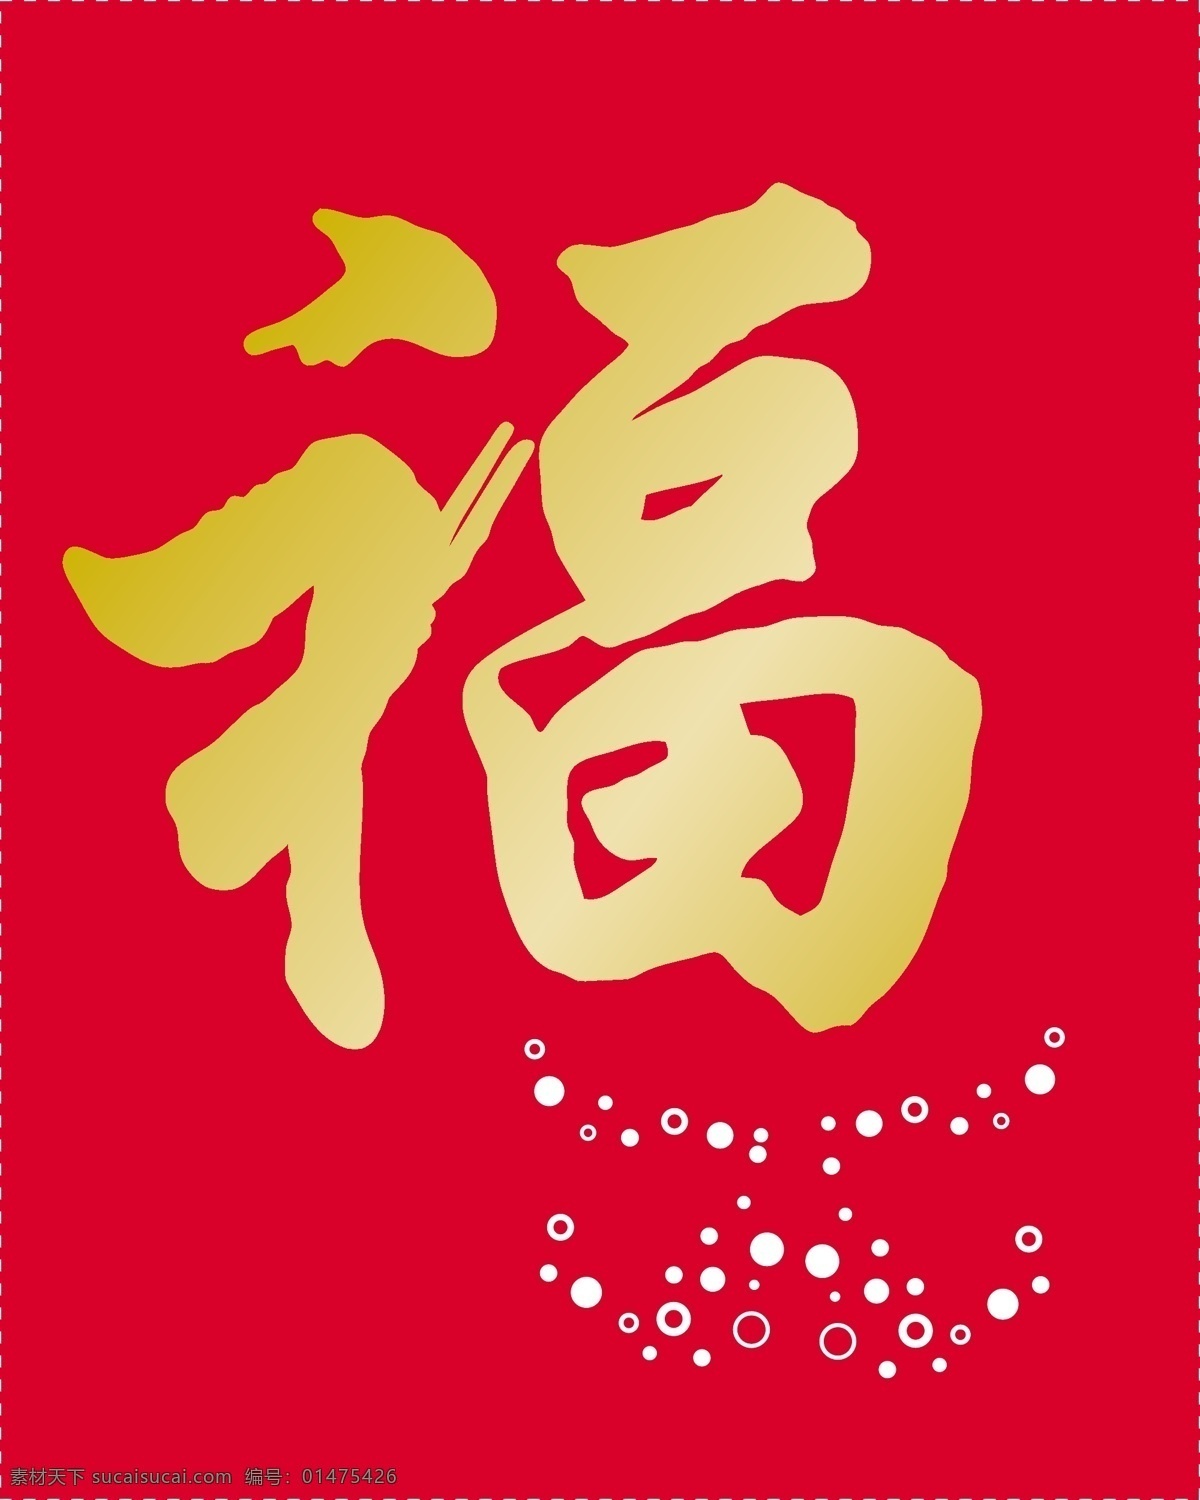 红包袋 红包刀模图 福字红包 新年红包 喜庆红包 春节 节日素材 矢量